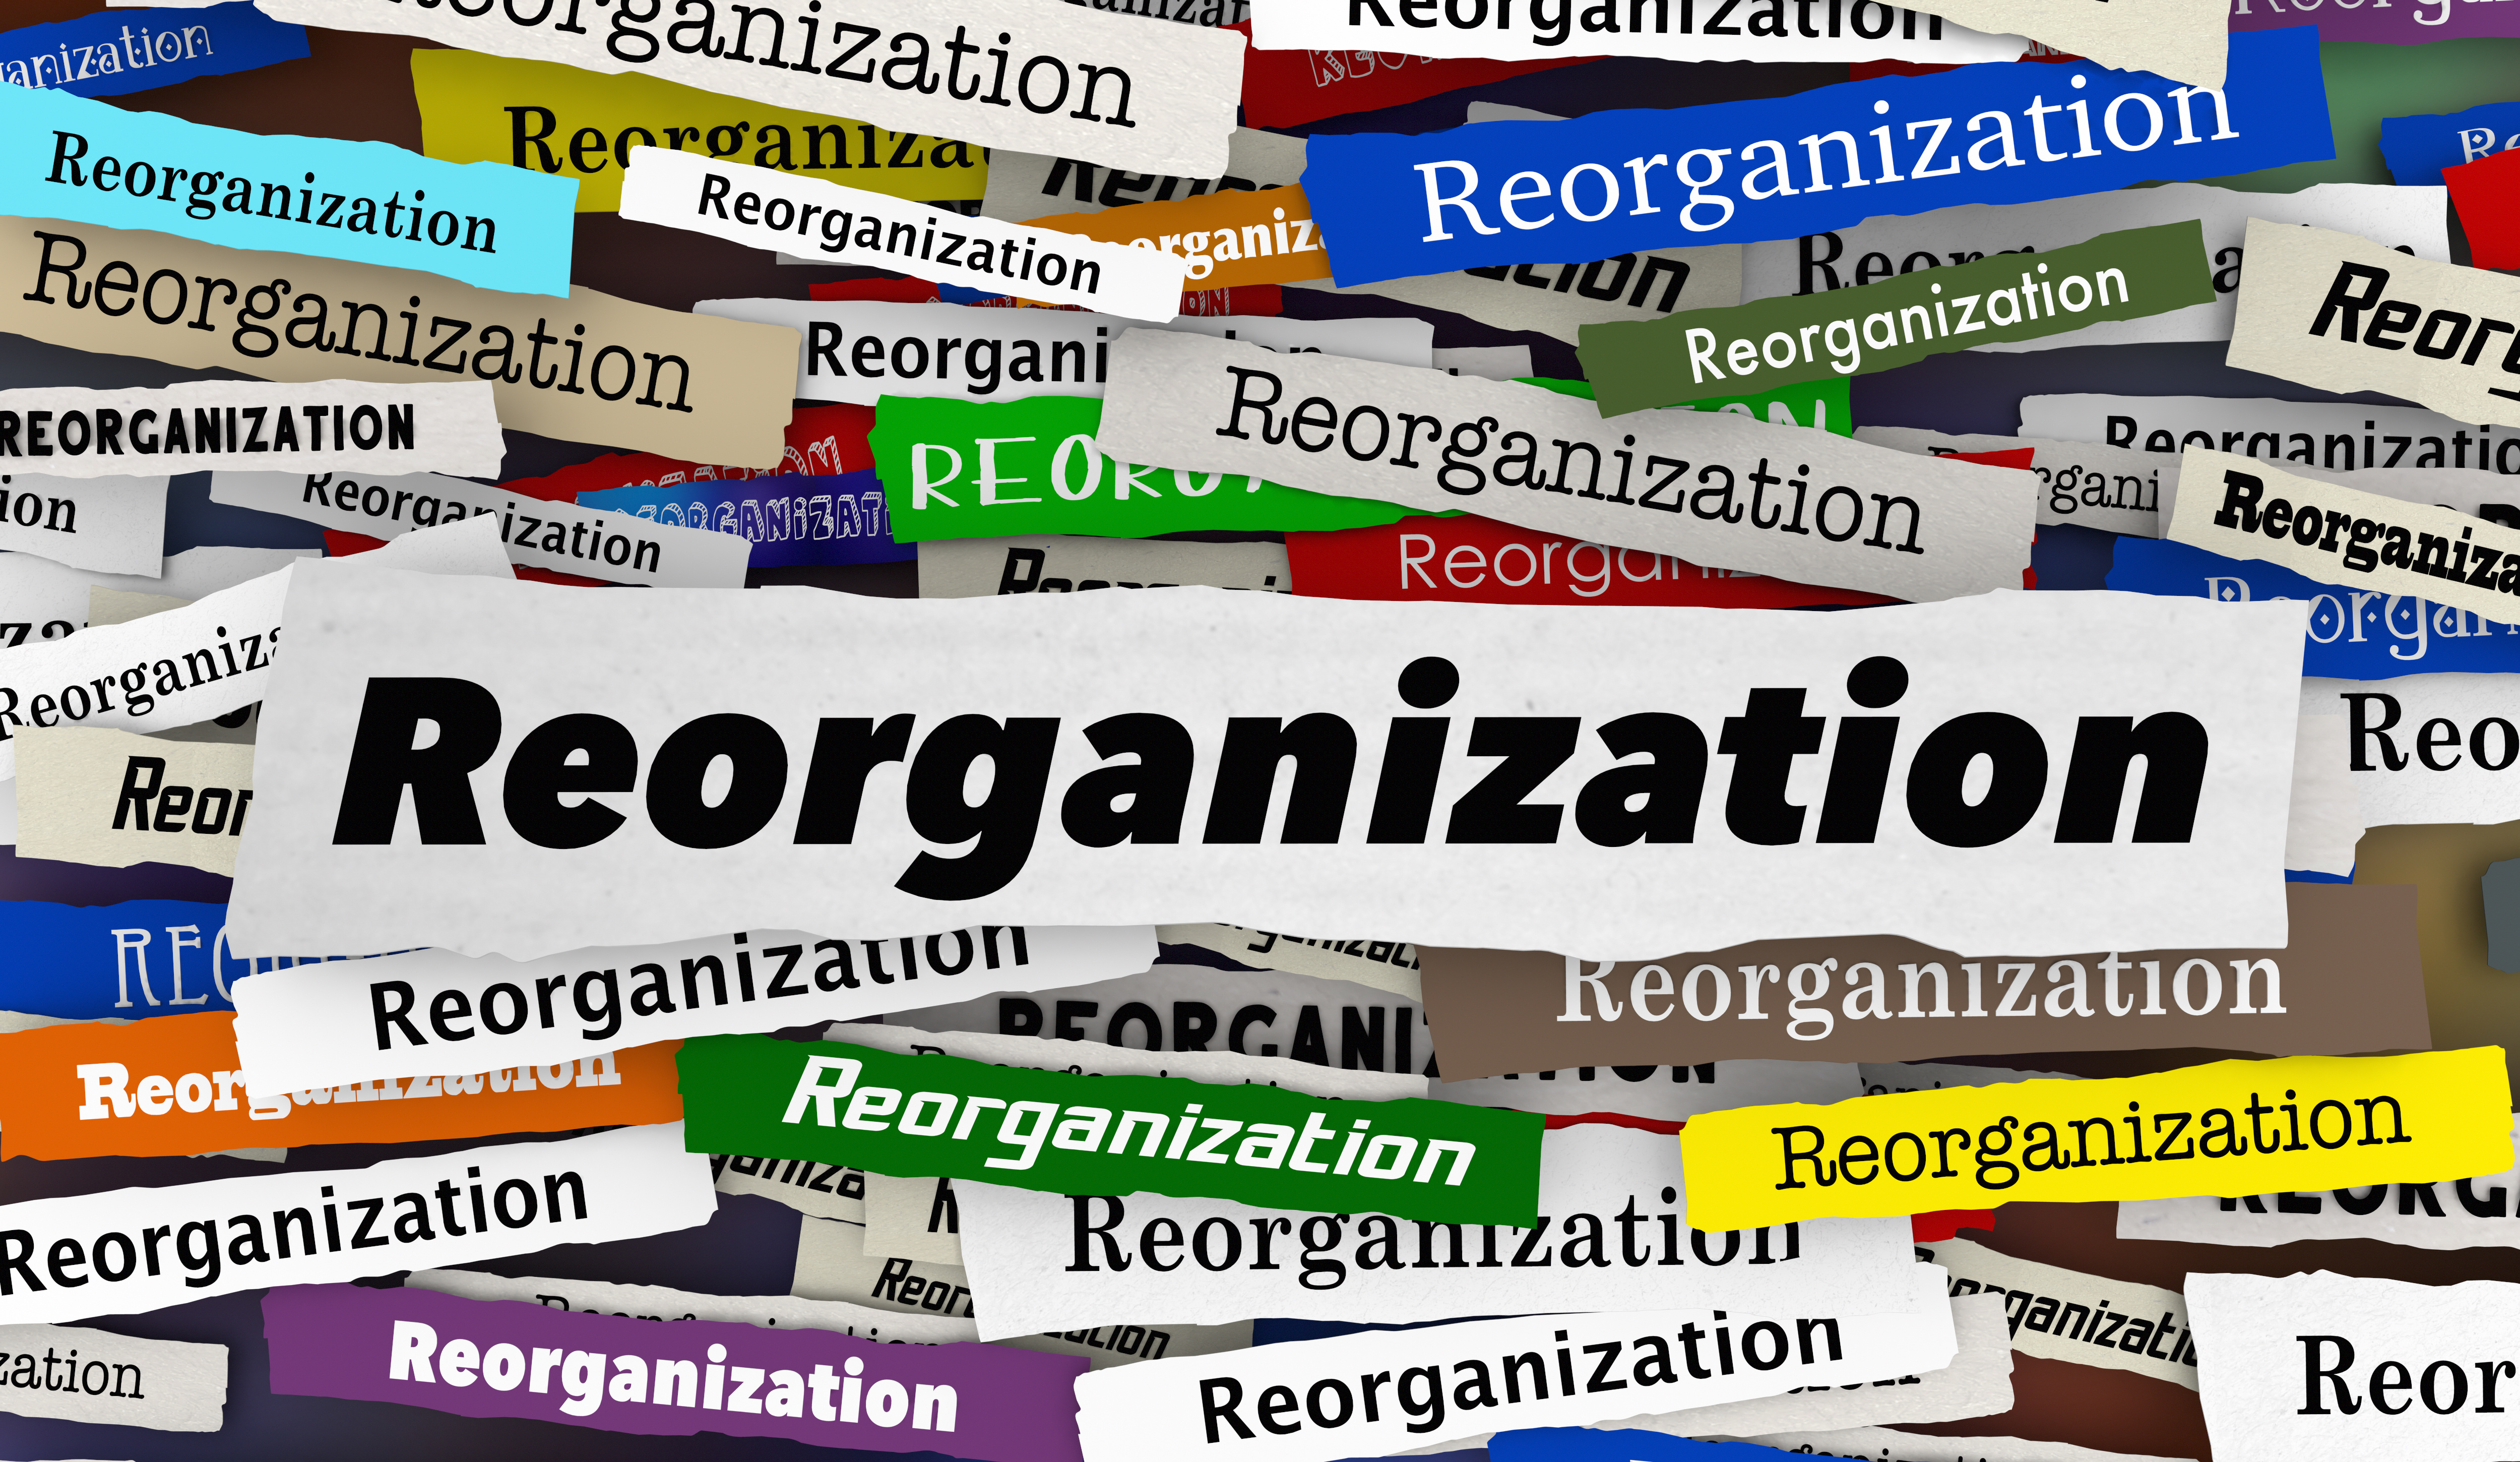 Reorganization header